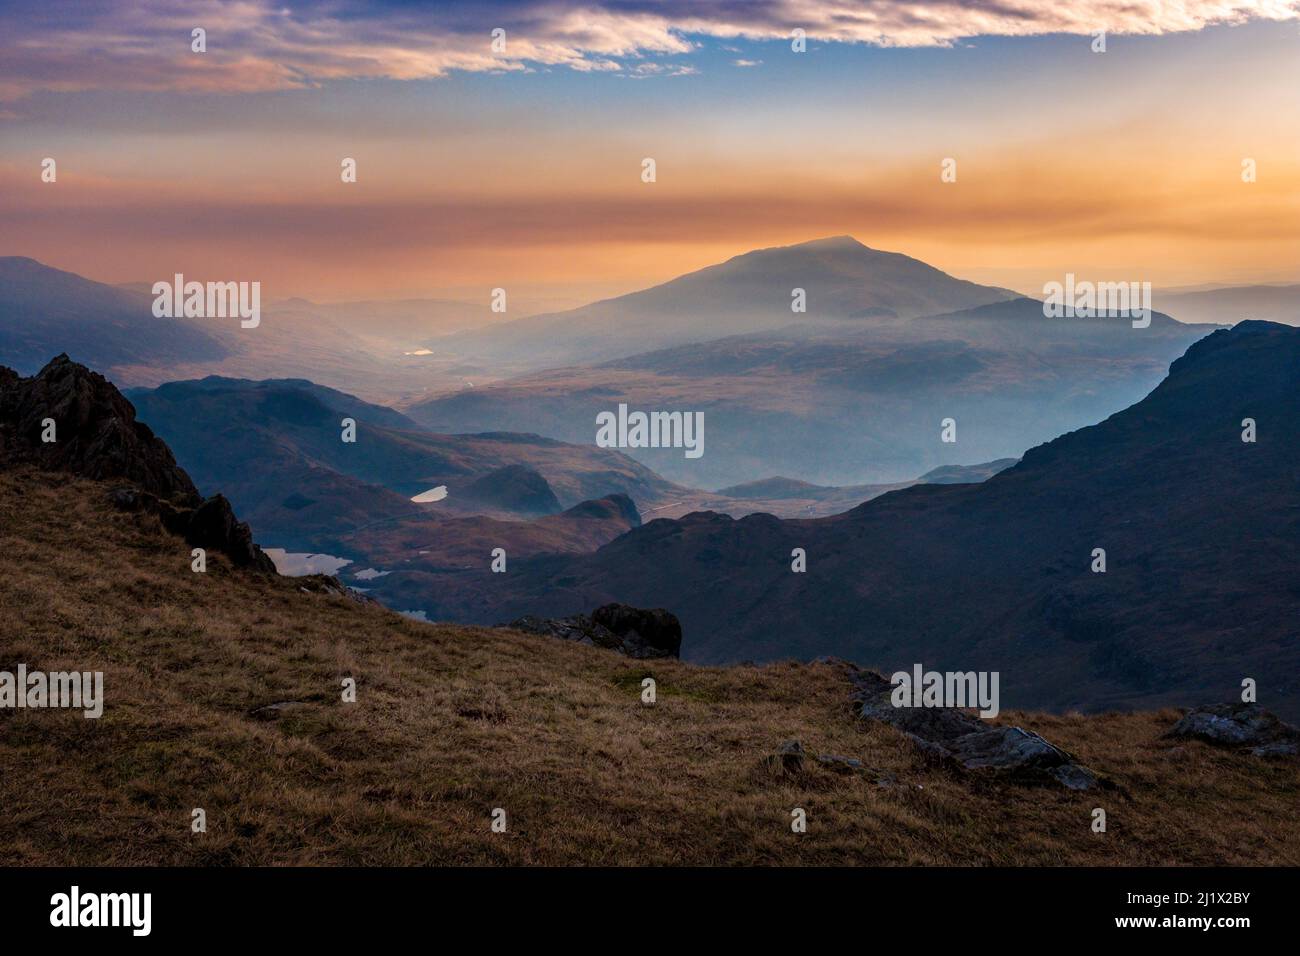 Moel Siabod une montagne à Snowdonia, au nord du pays de Galles, à l'aube, vue de Snowdon Banque D'Images